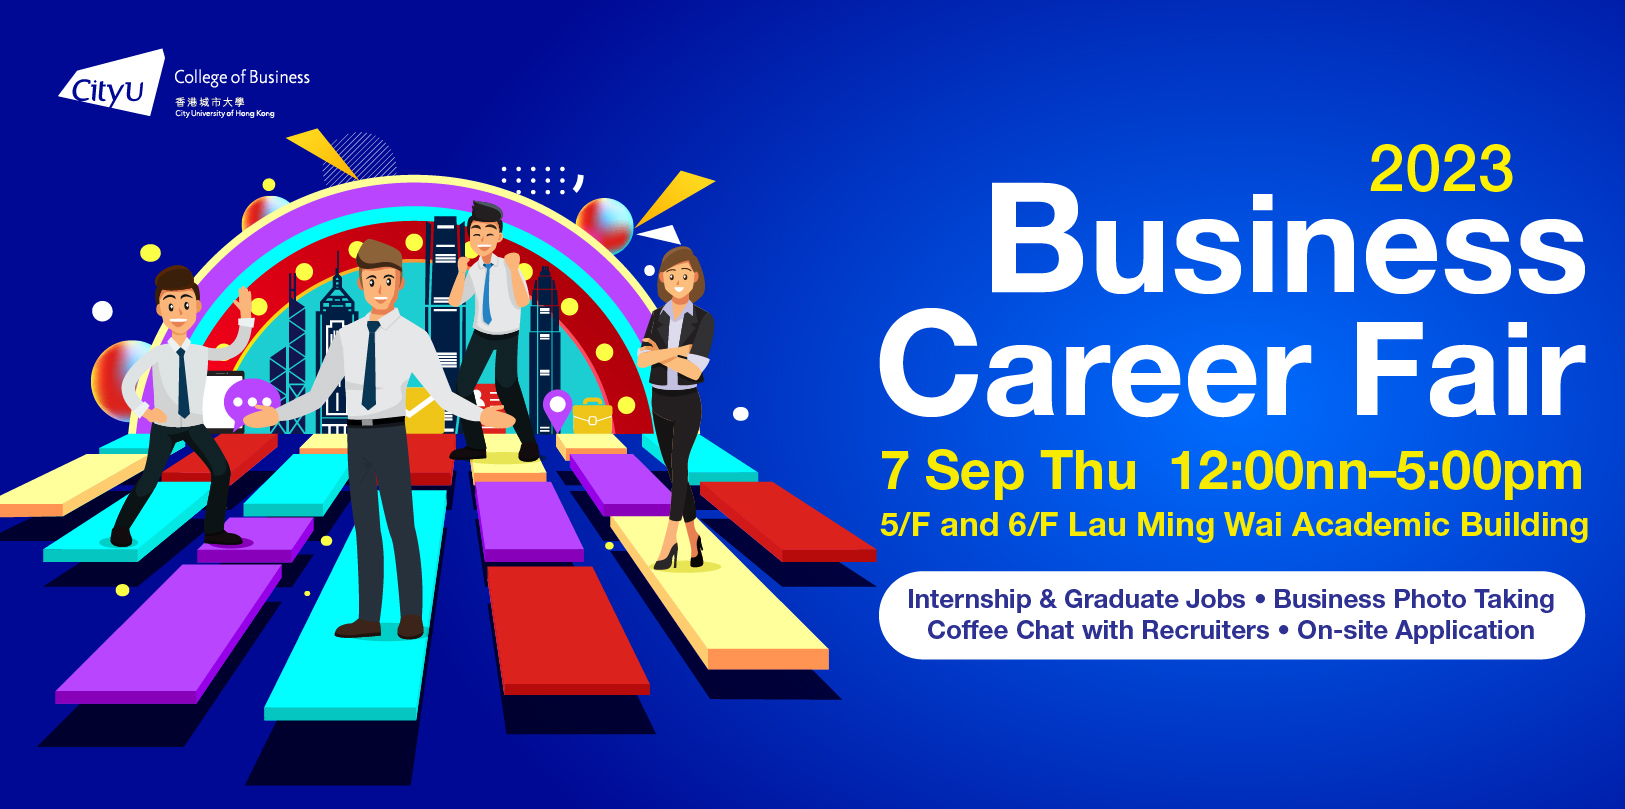 Business Career Fair 2023